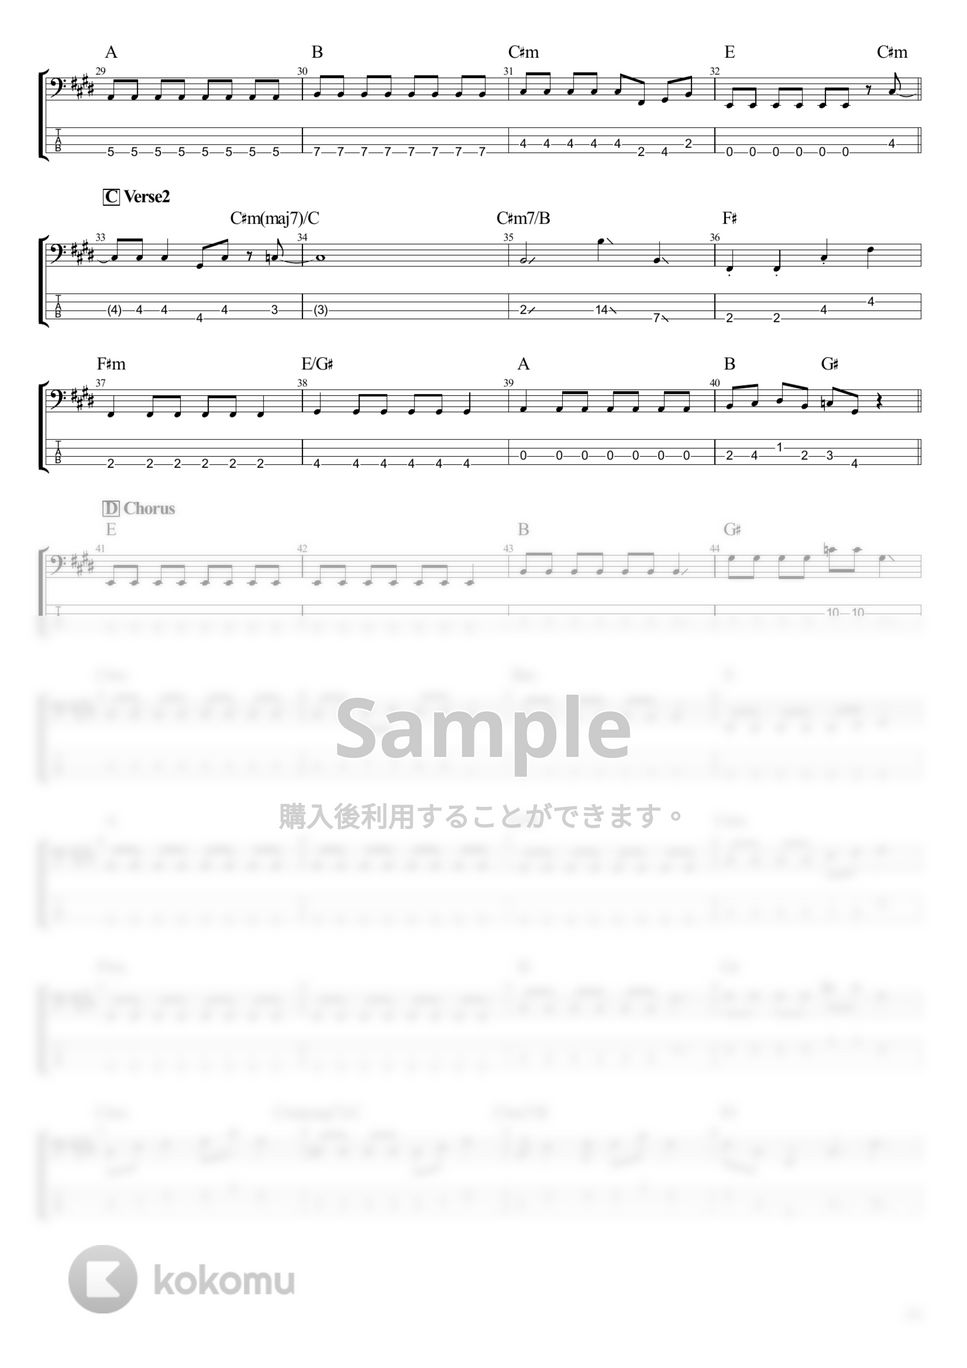 結束バンド - 忘れてやらない (ベース Tab譜 4弦) by T's bass score